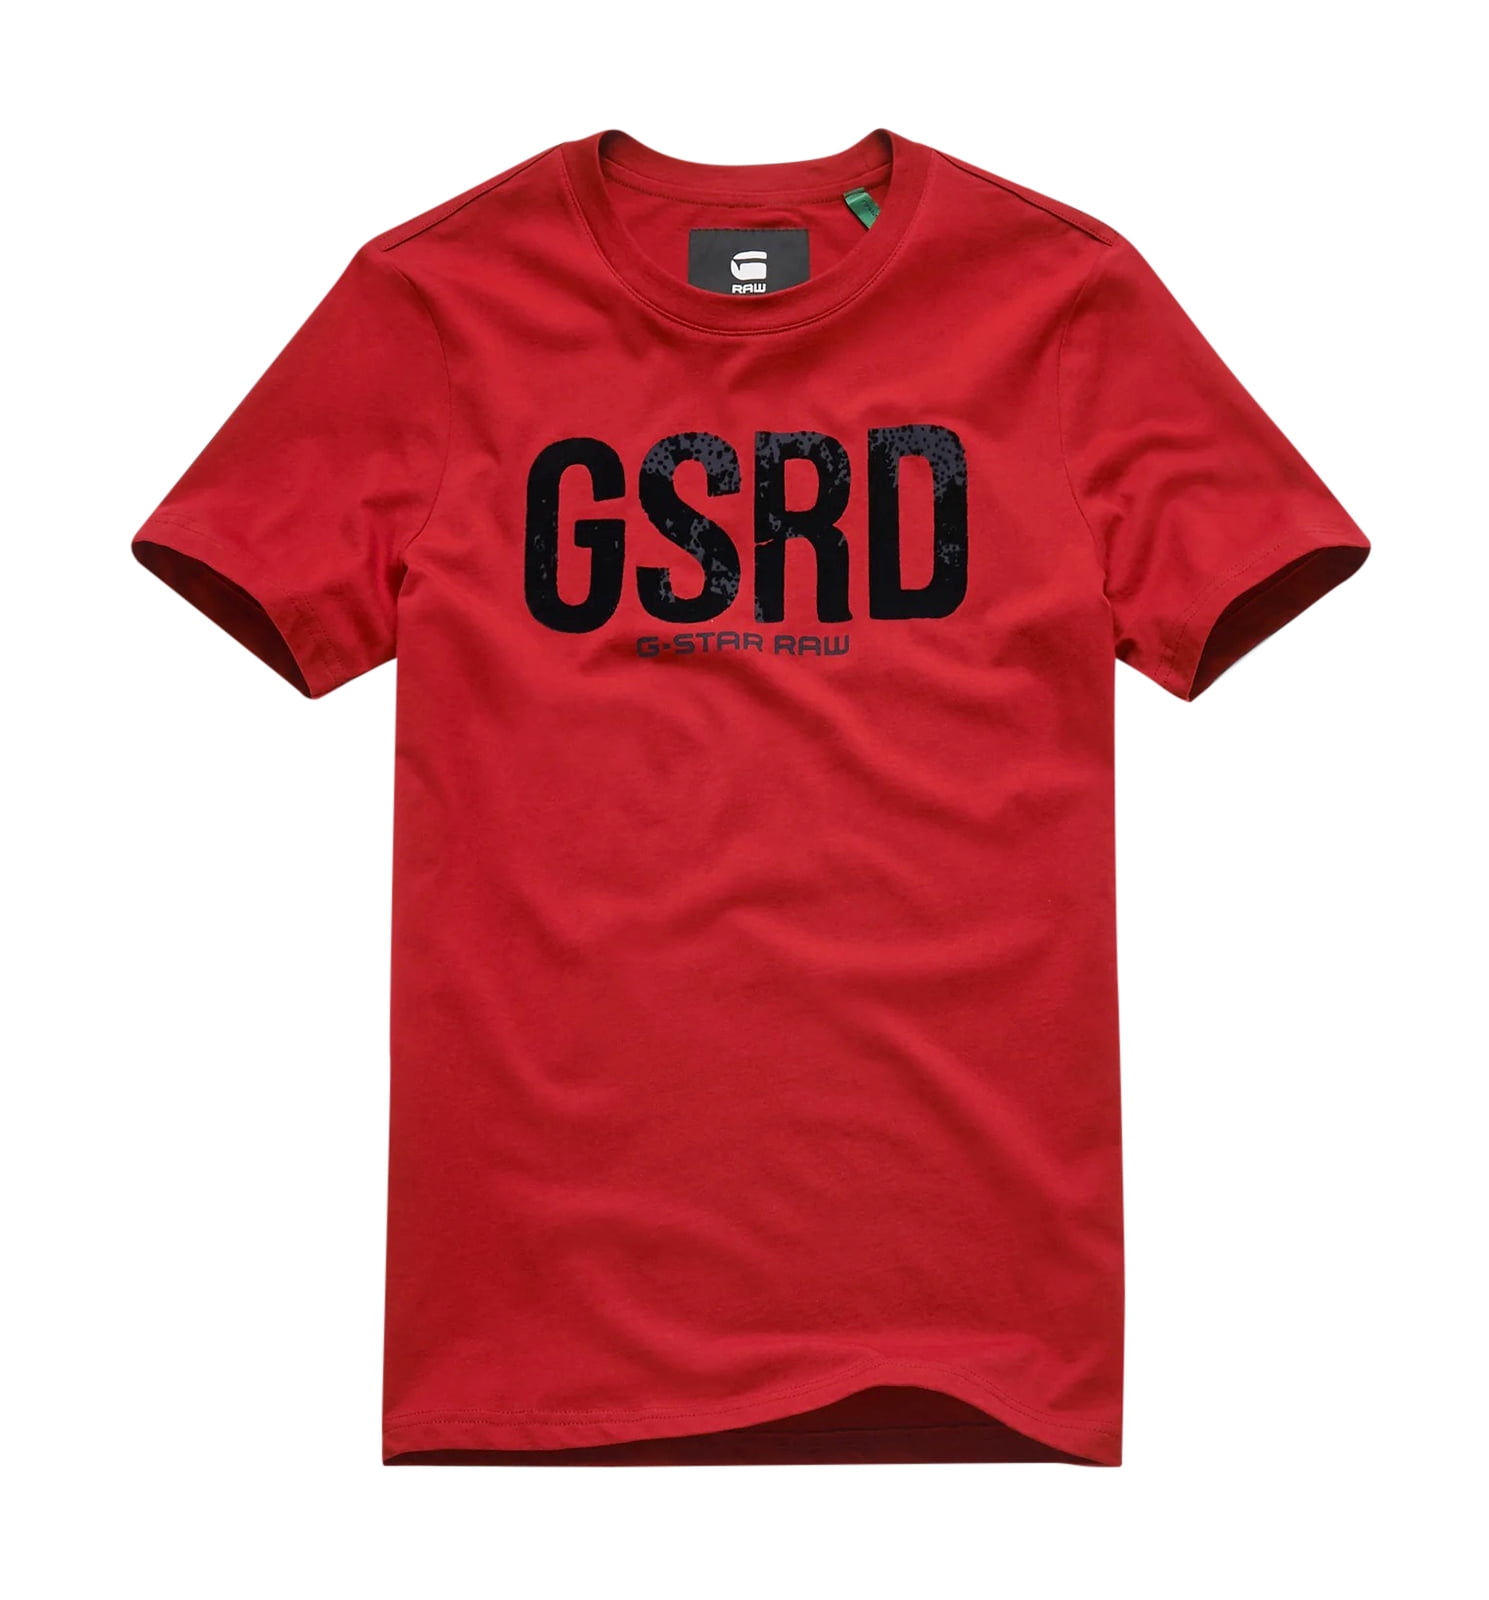 gsrd t shirt